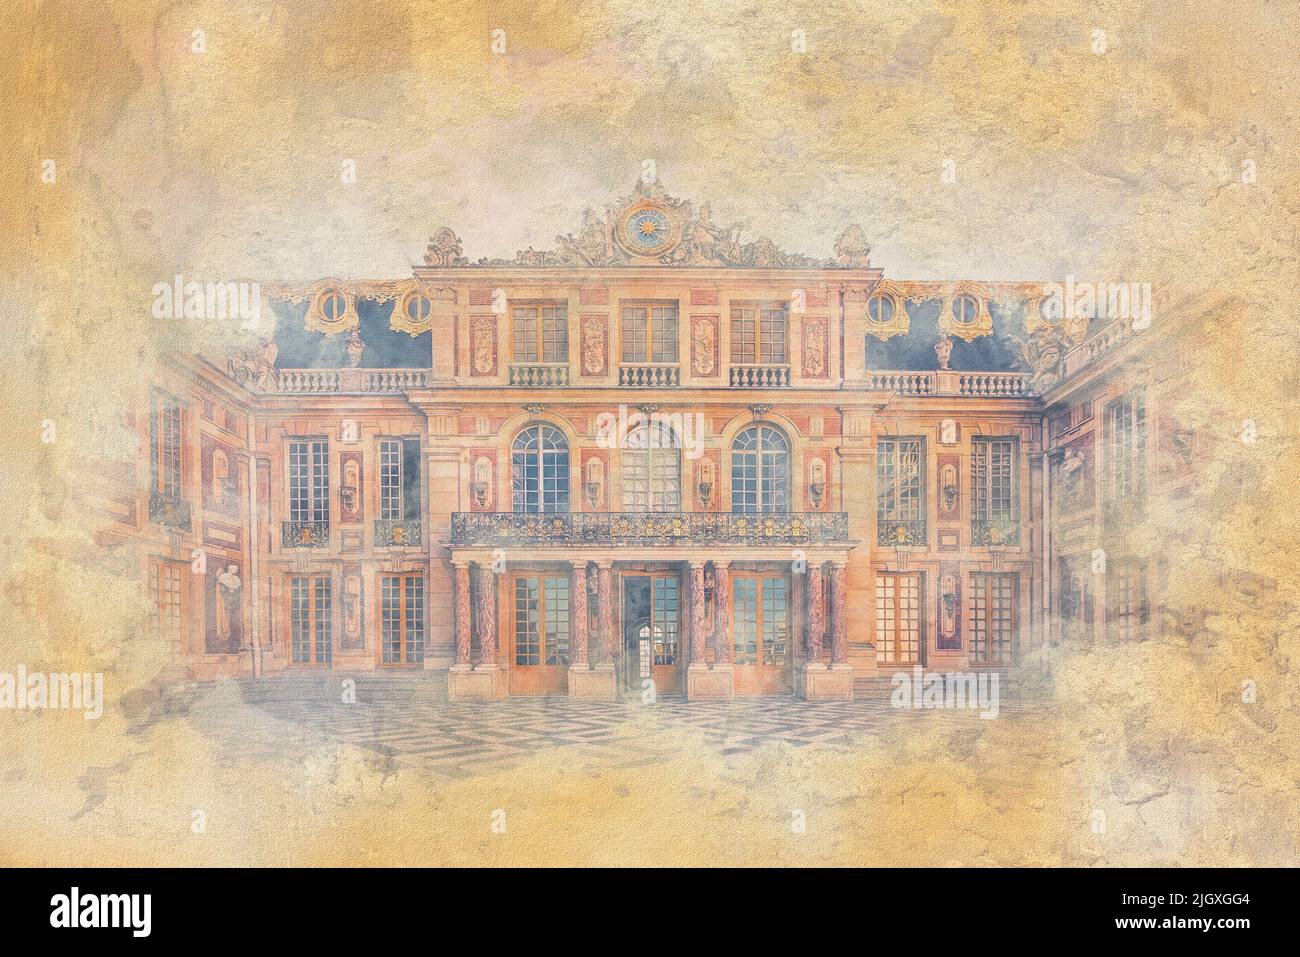 Versailles Palace Fachada - Ilustración con efecto acuarela Foto de stock